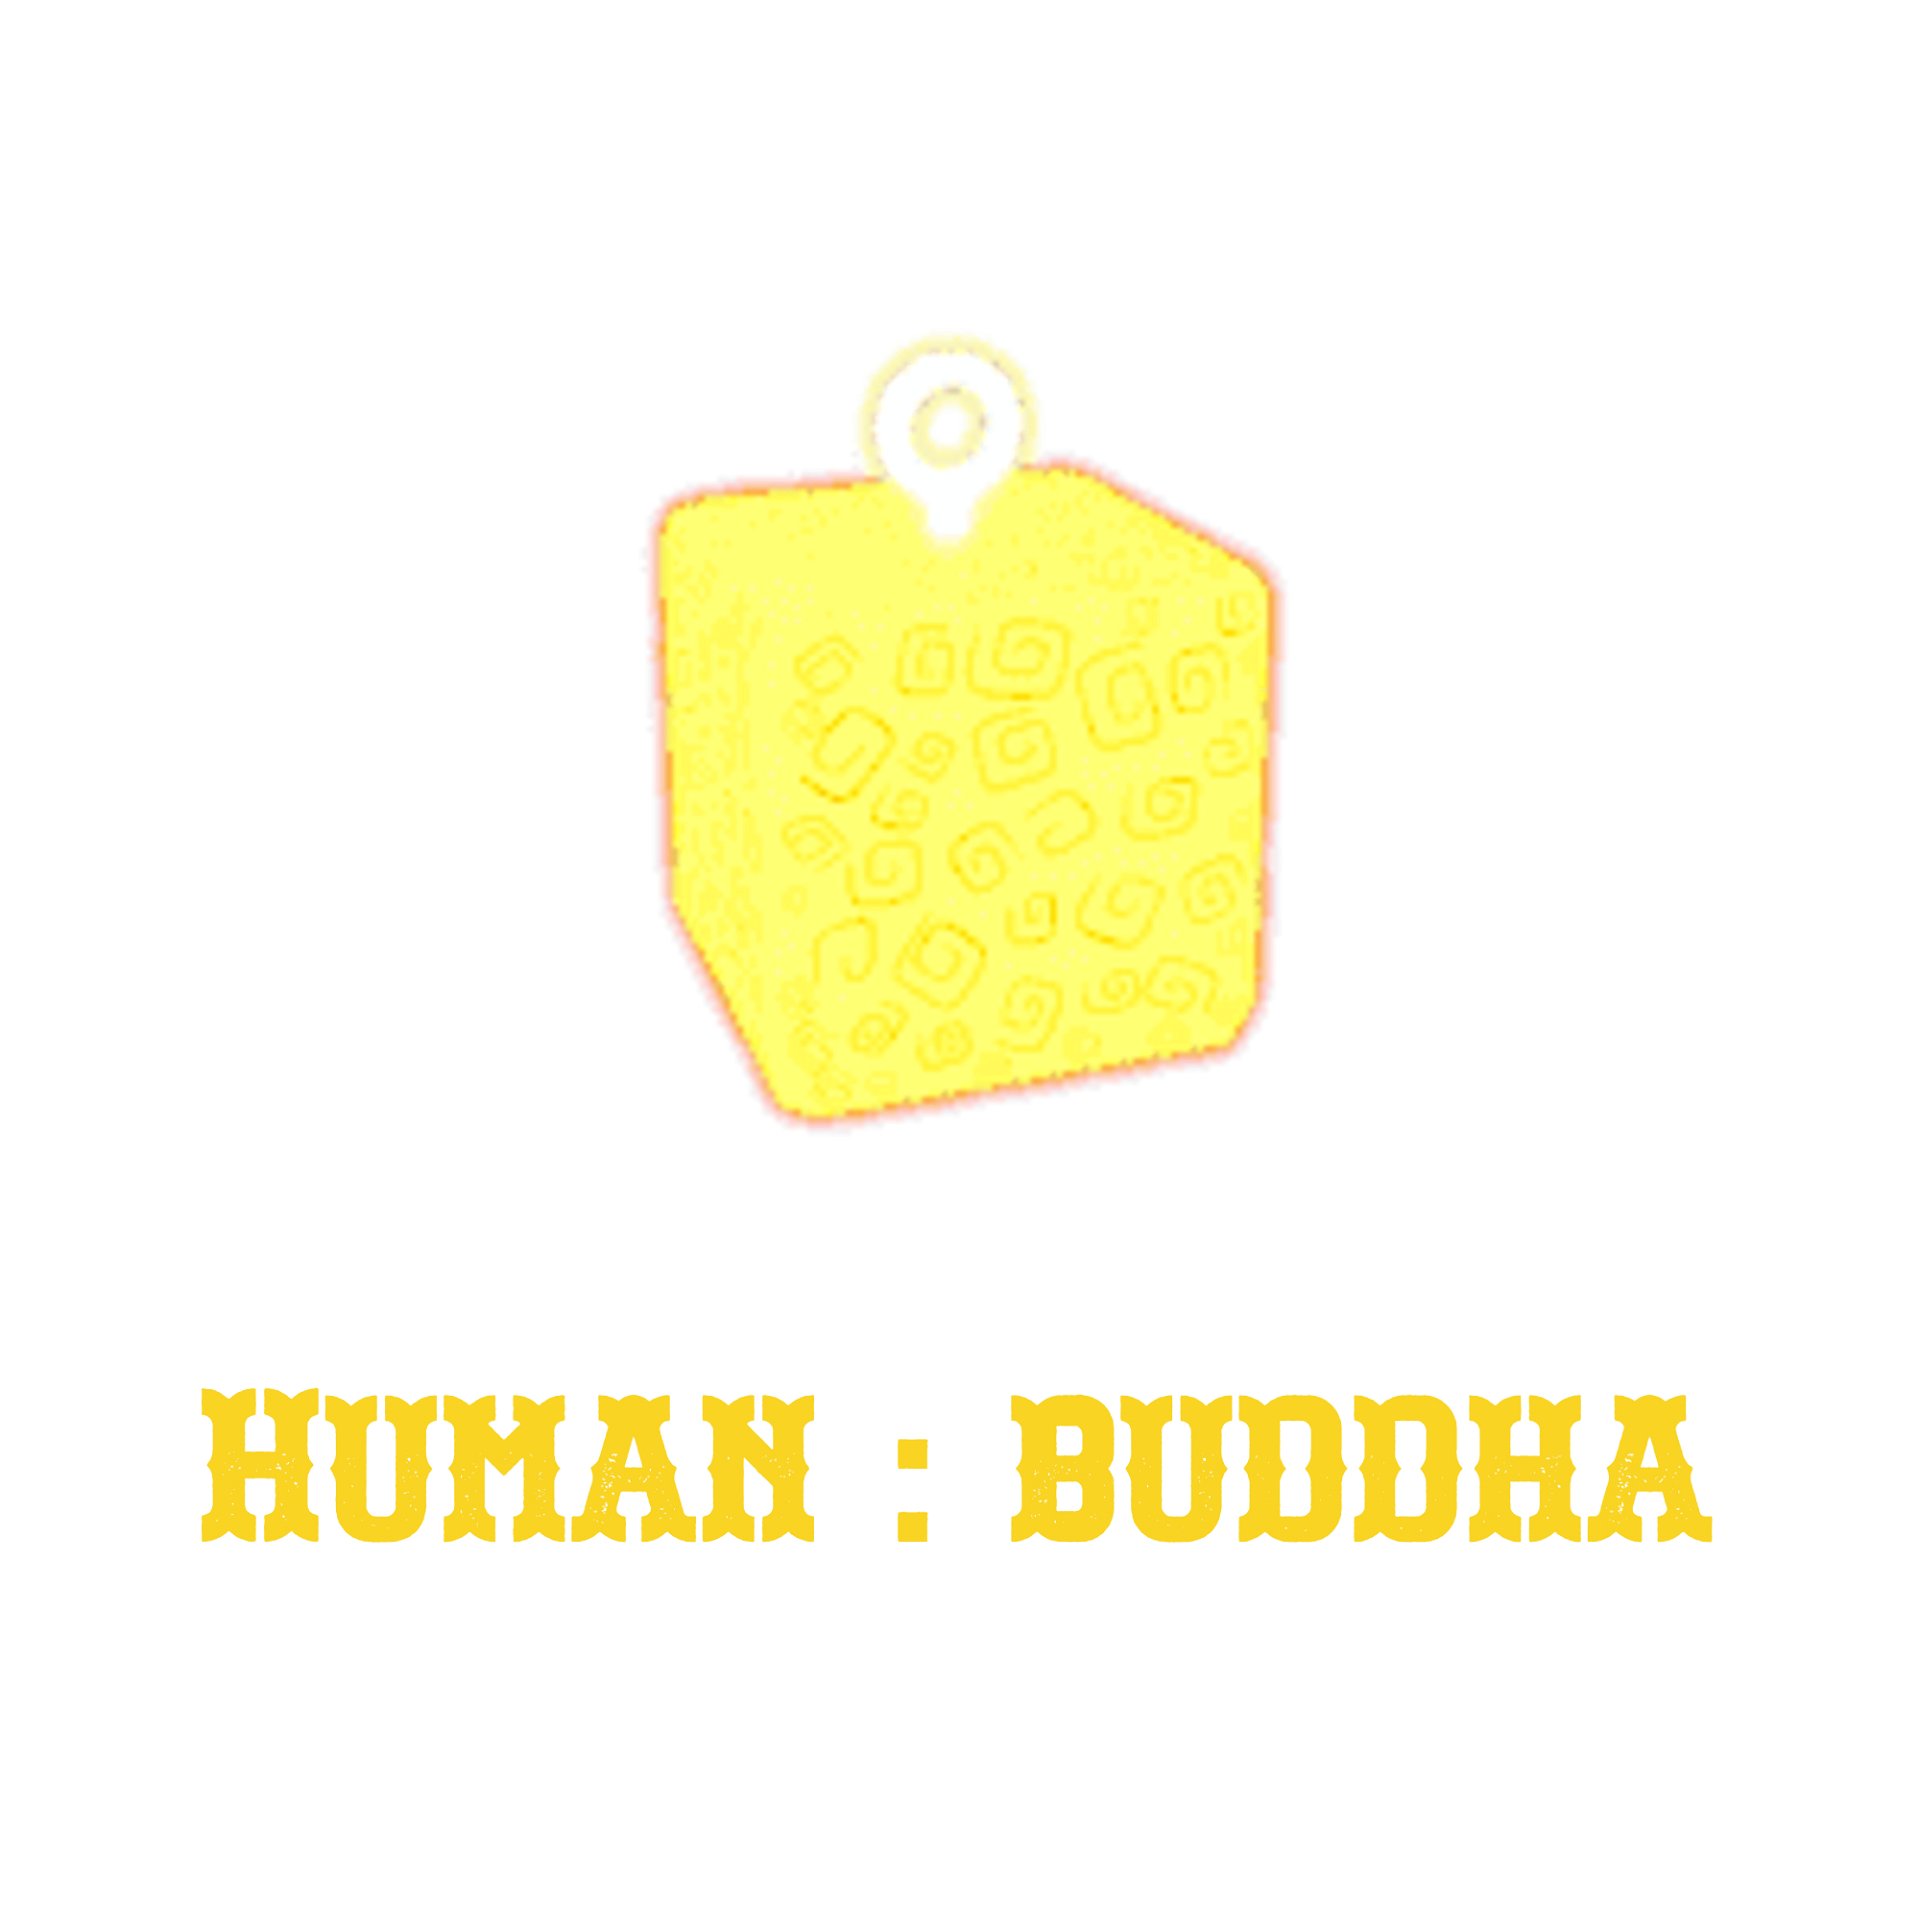 Other  Human Buddha Blox Fruits - Itens de Jogos - Gameflip